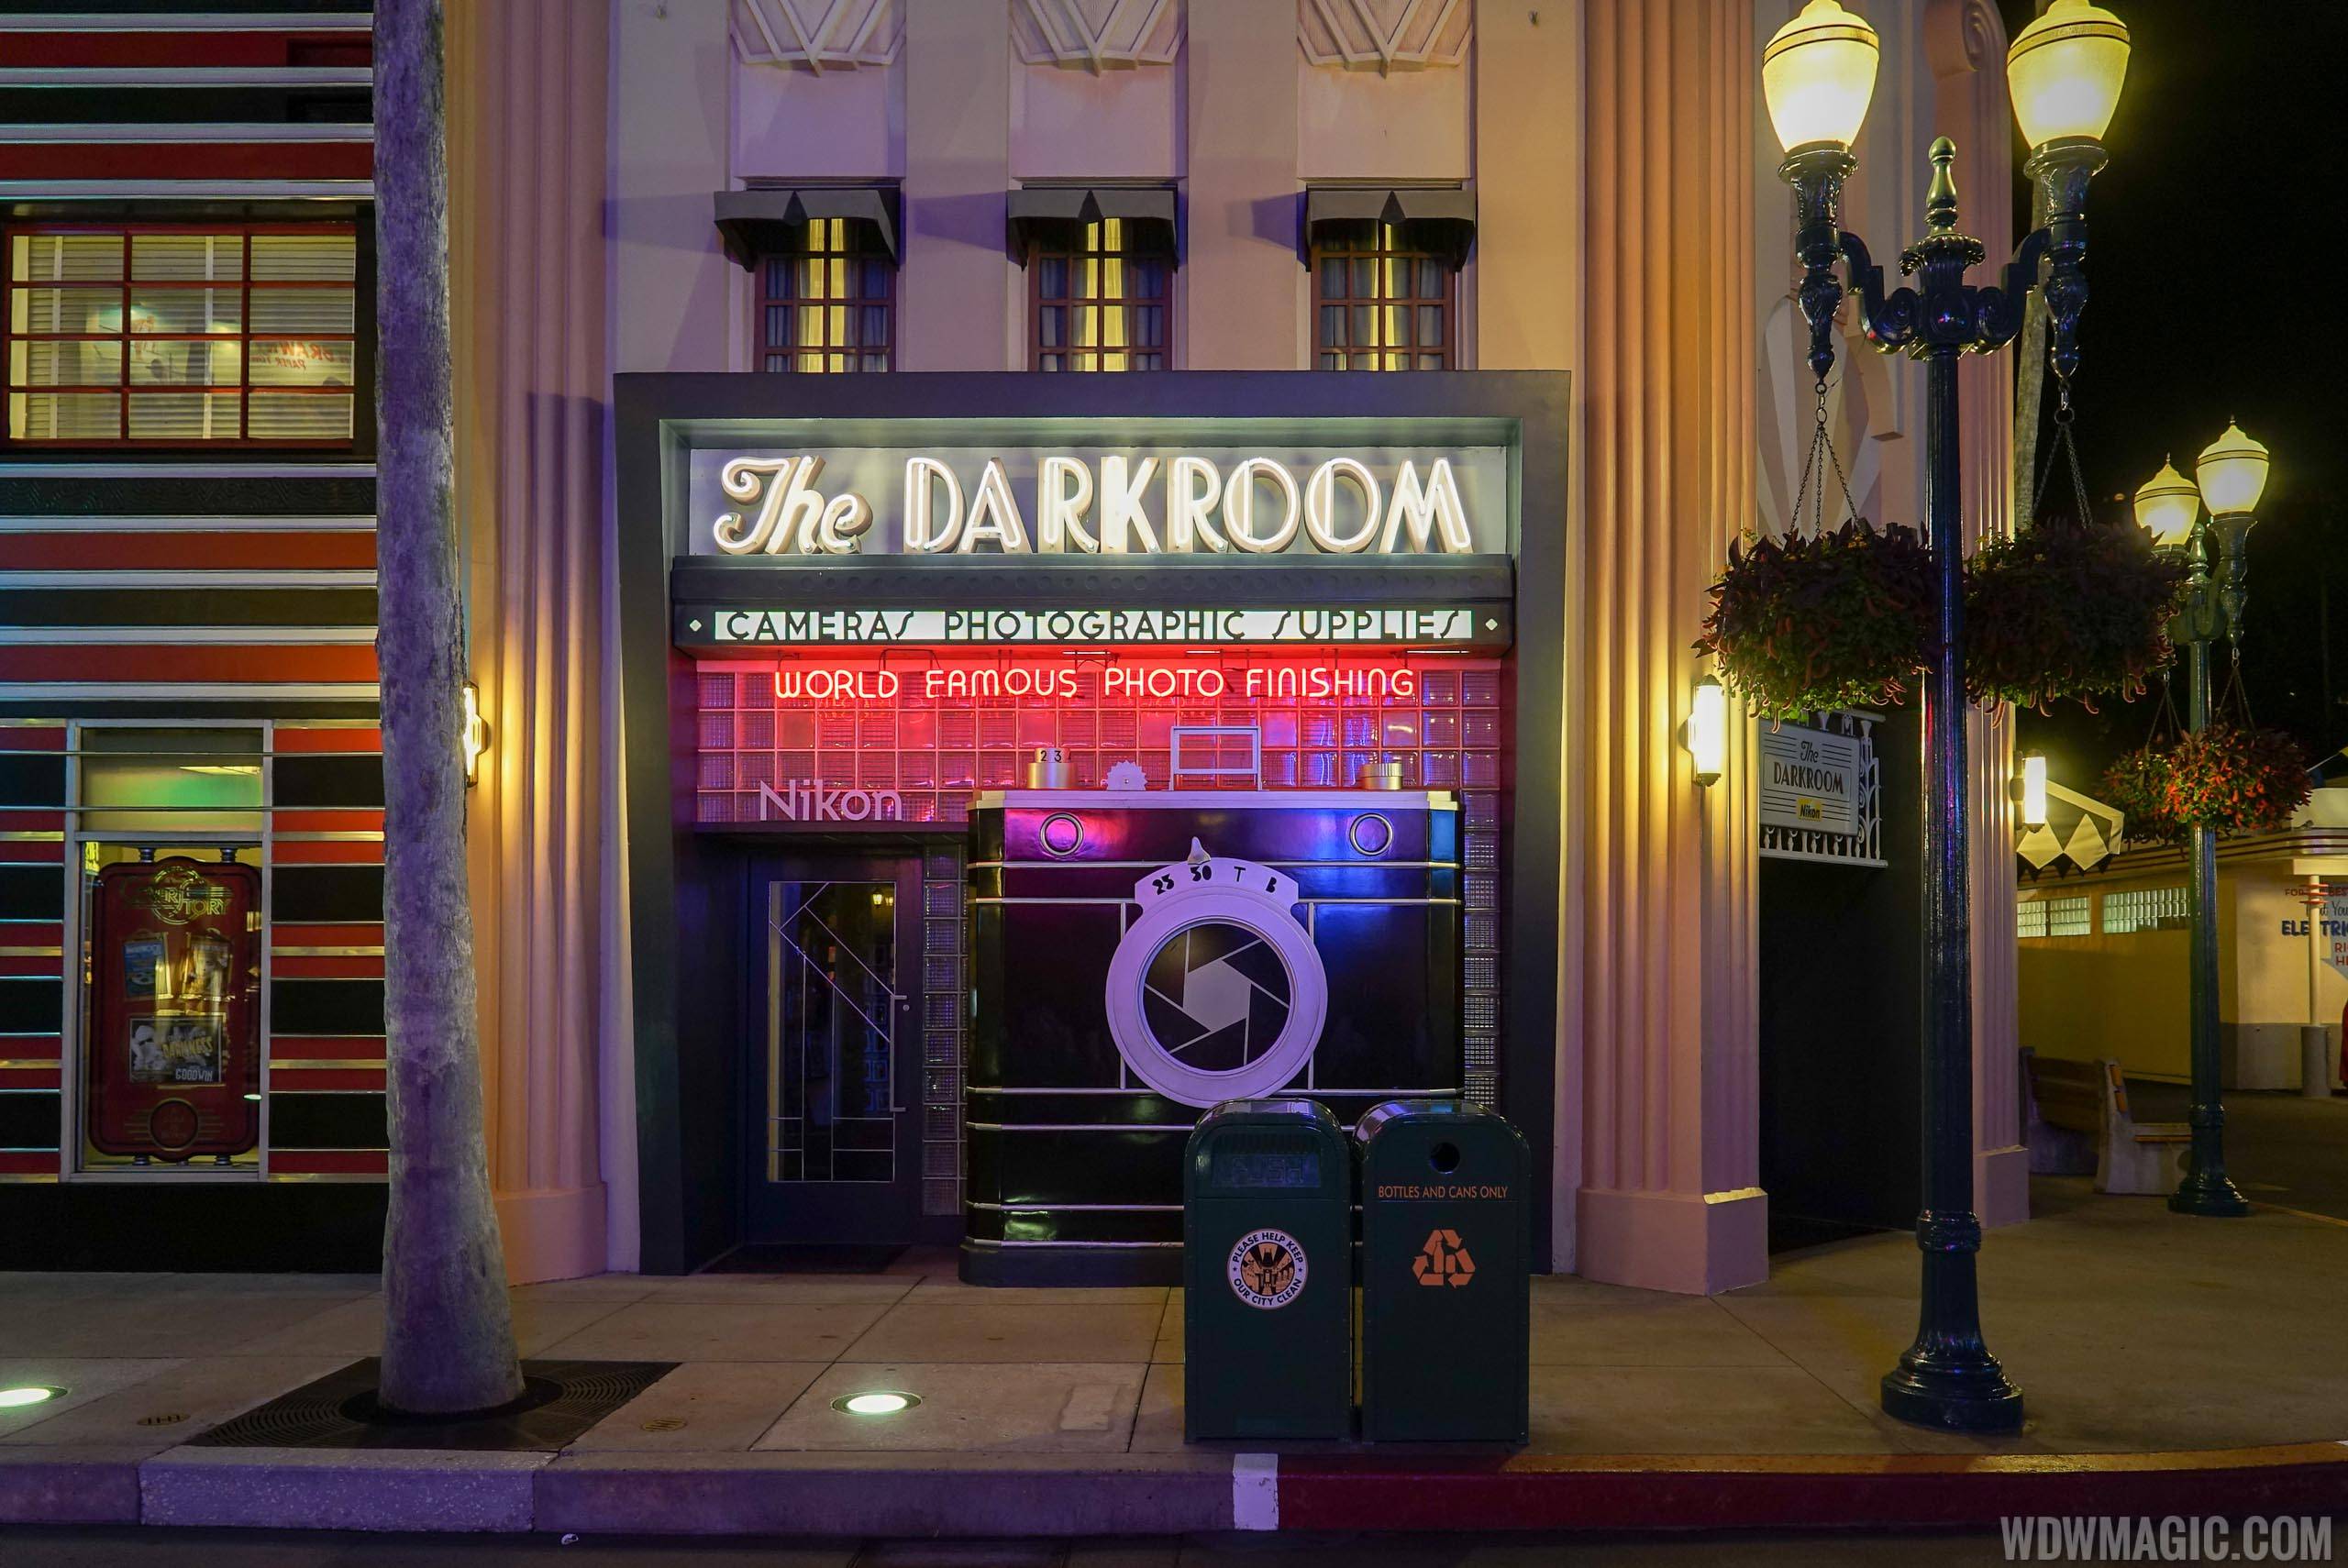 The Darkroom overview